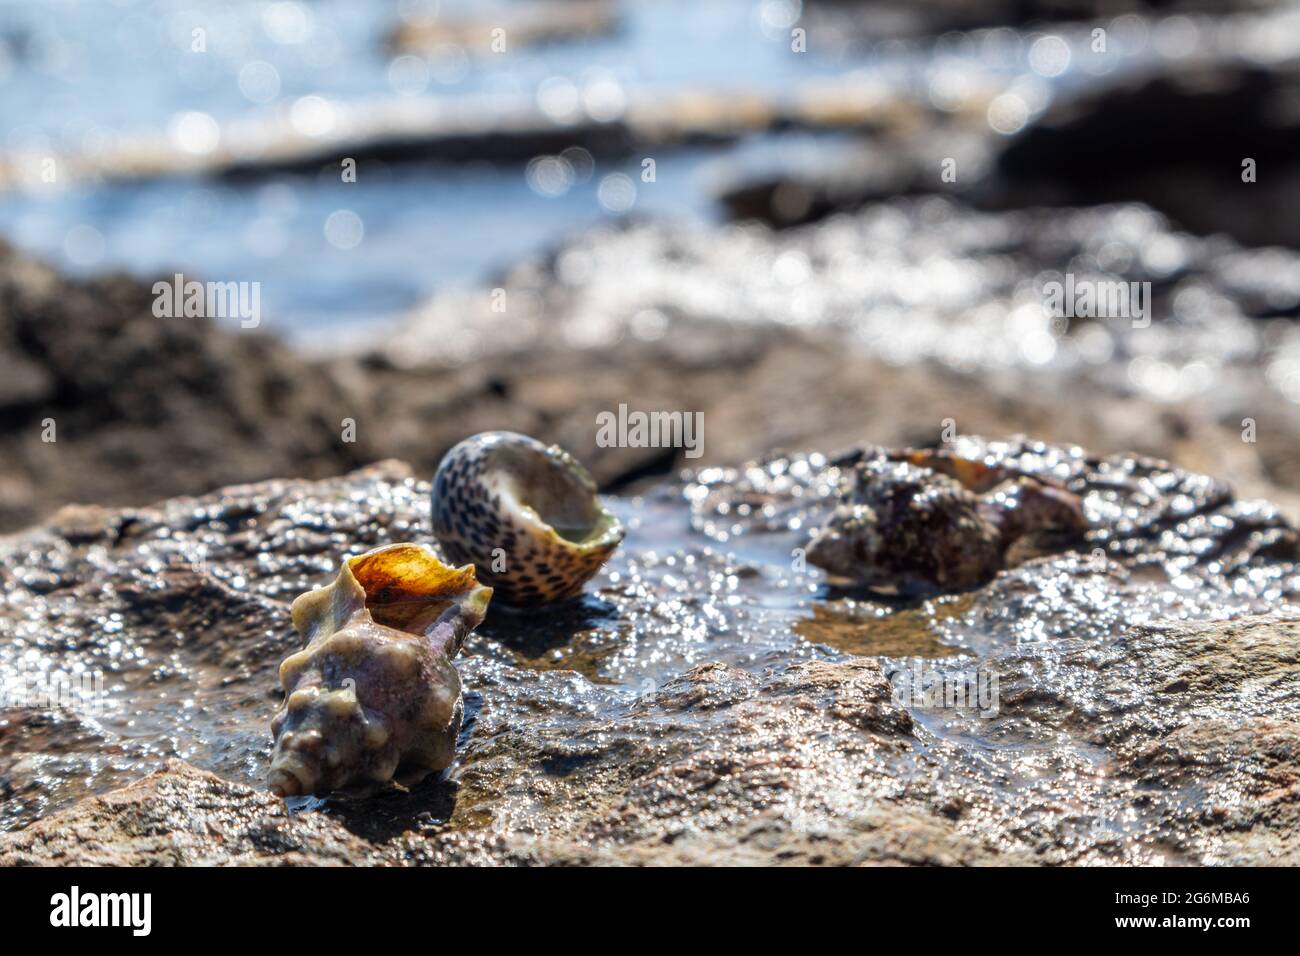 Granchi eremiti nascosti in molluschi conchiglie dure da vicino sulla superficie rocciosa sotto il sole mediterraneo estivo sulla riva del mare. Vita marina selvaggia Foto Stock